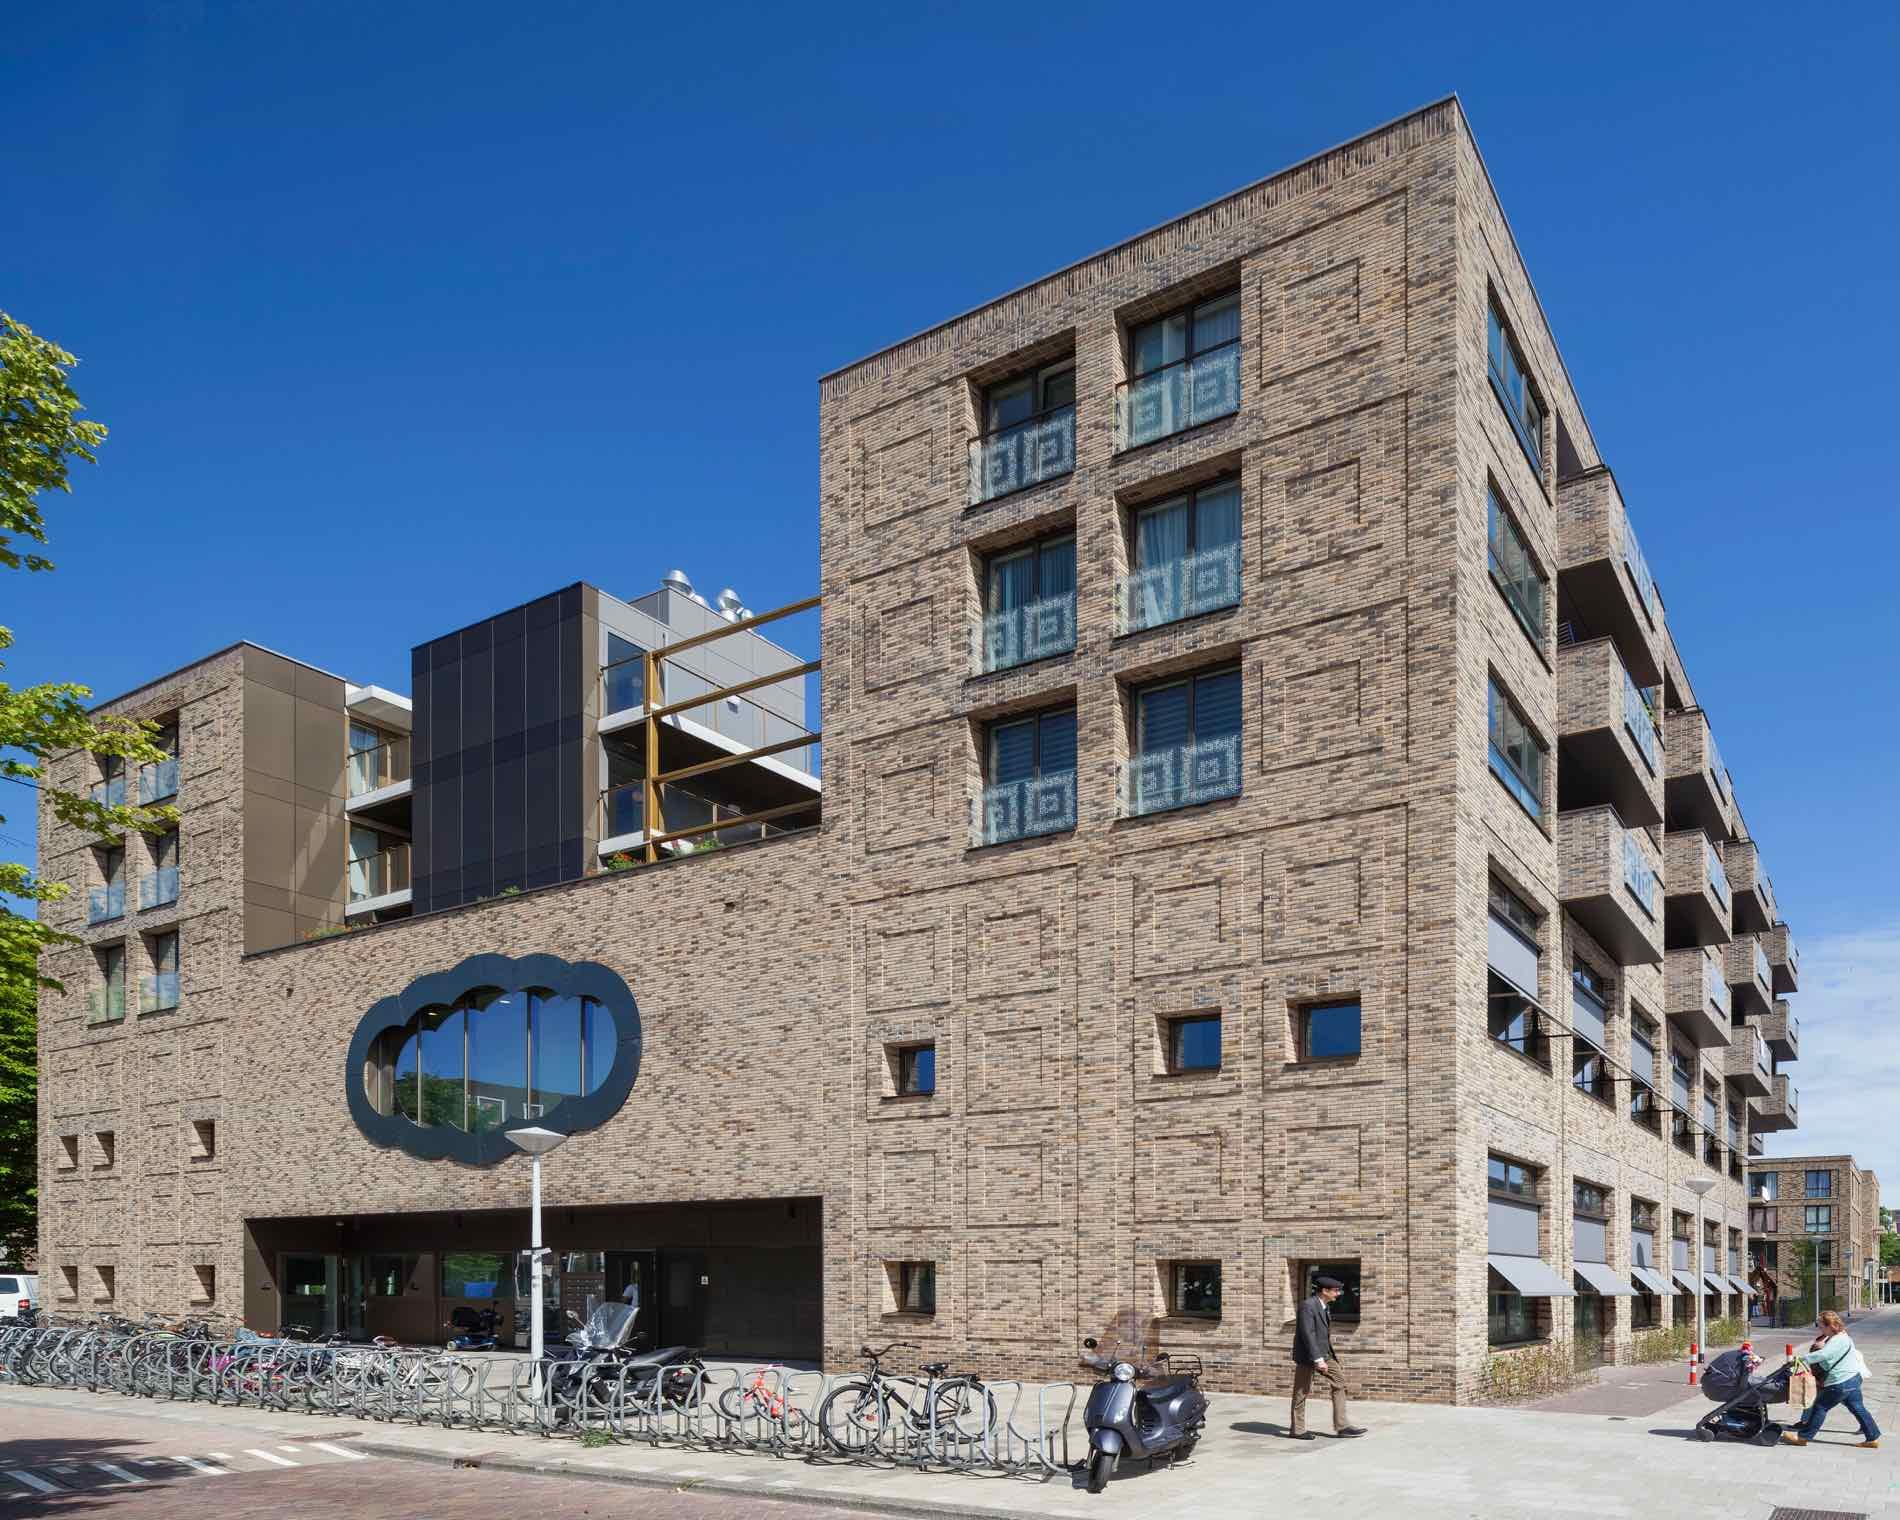 Woningen en school BOLO 1, Amsterdam - Marlies Rohmer Architecture & Urbanism